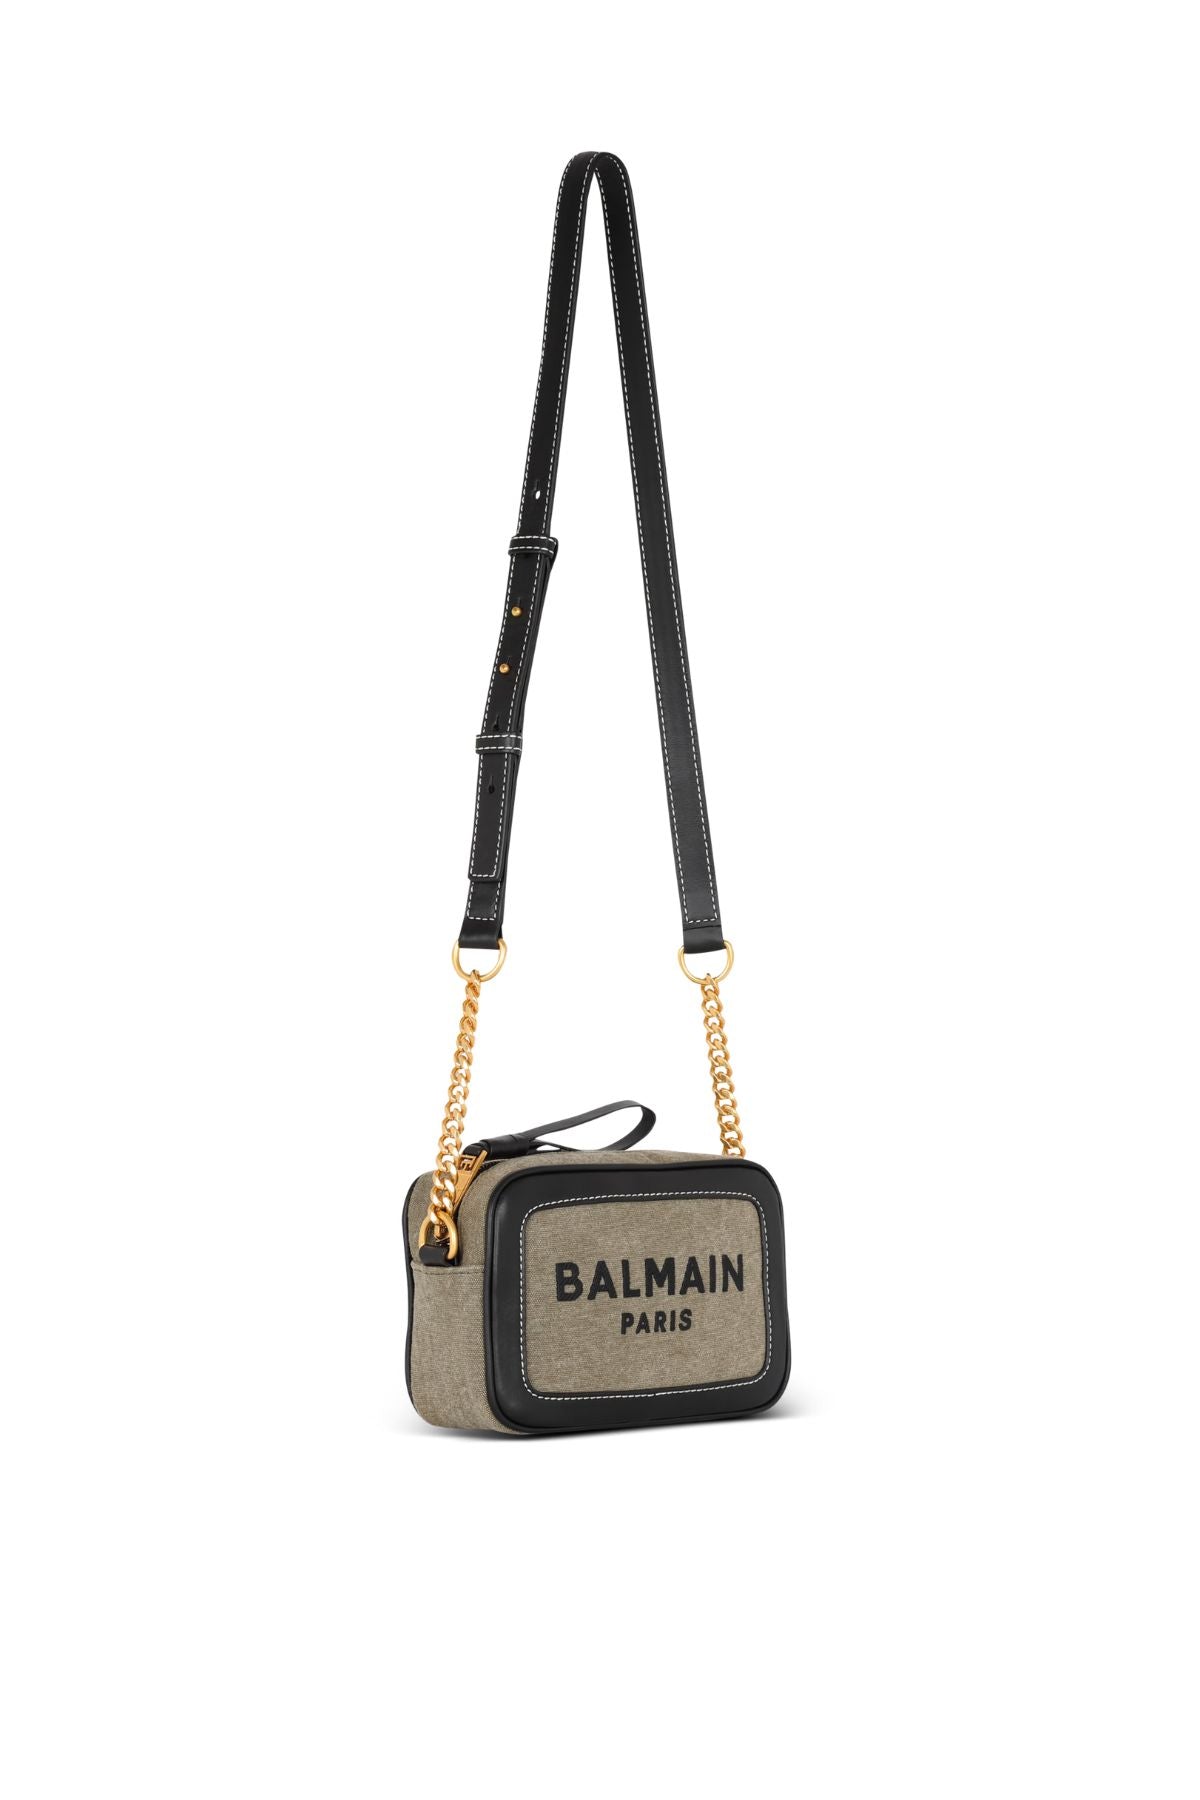 Balmain B-Army Camera Bag - Khaki/ Black